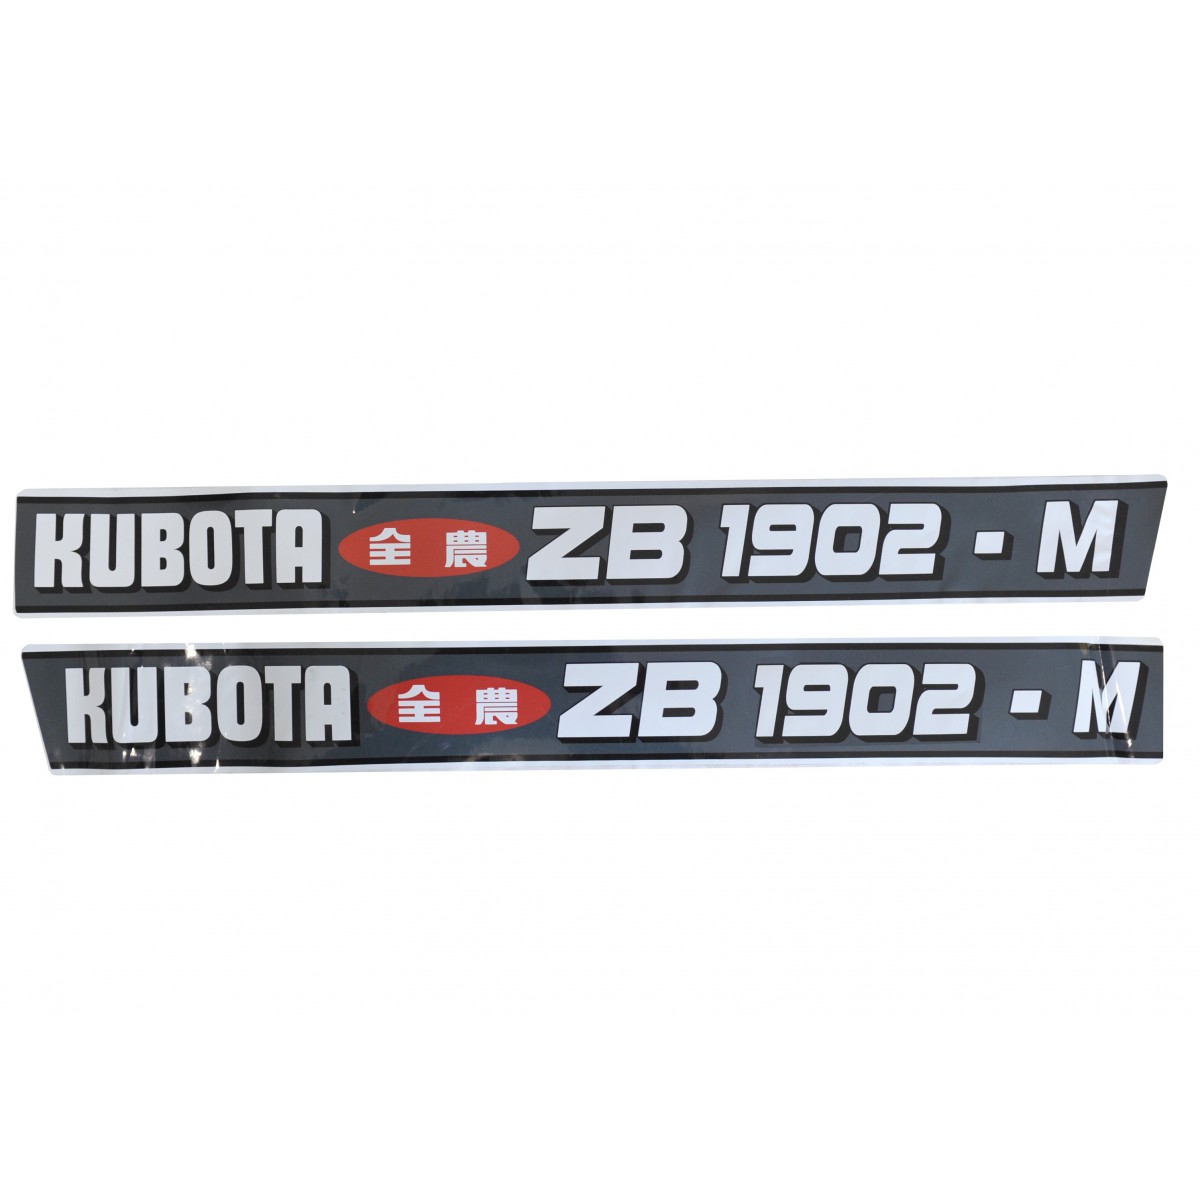 Kubota ZB1902-M stickers, 2x4 2WD, 4x4 4WD